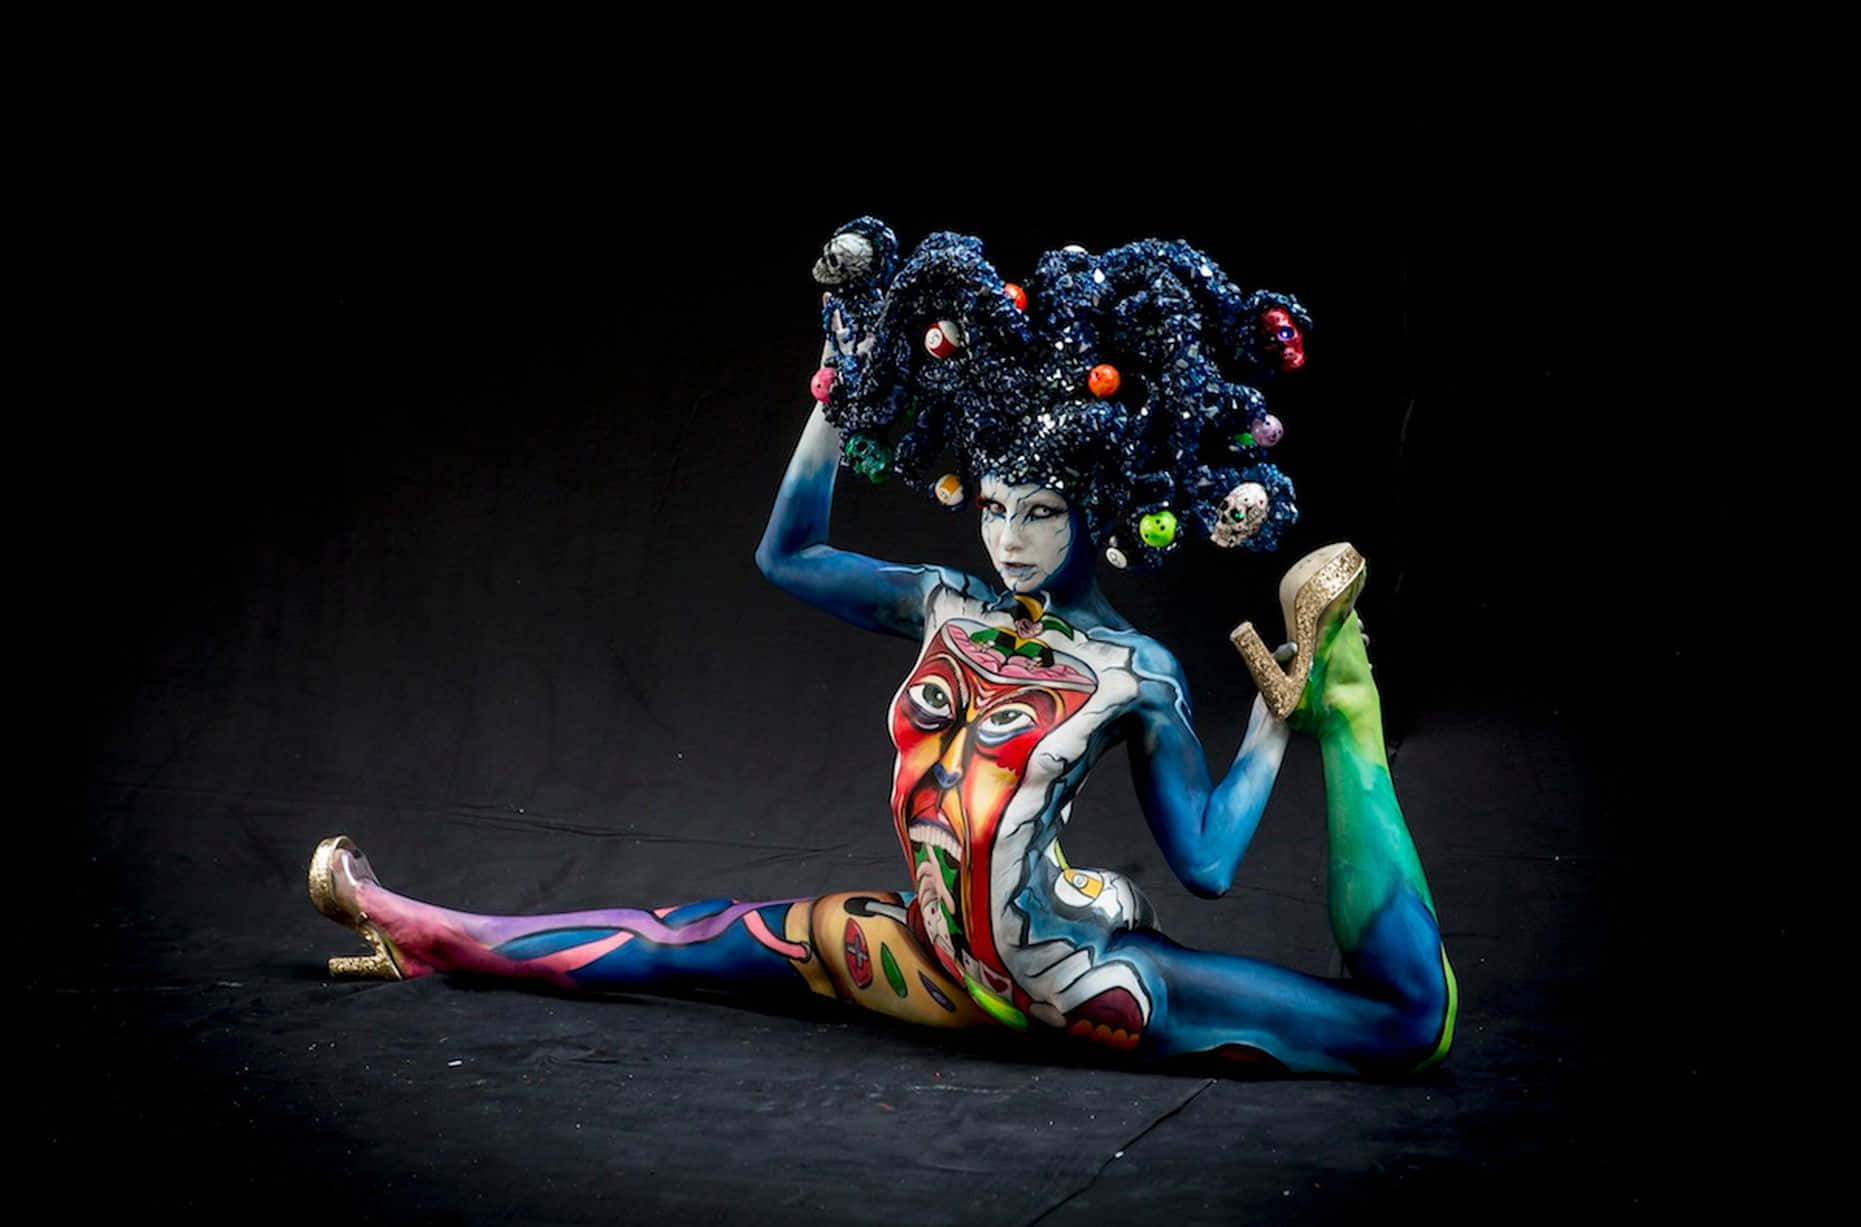 Festivalde Body Painting Mujer Colorida En Una Imagen Dividida.